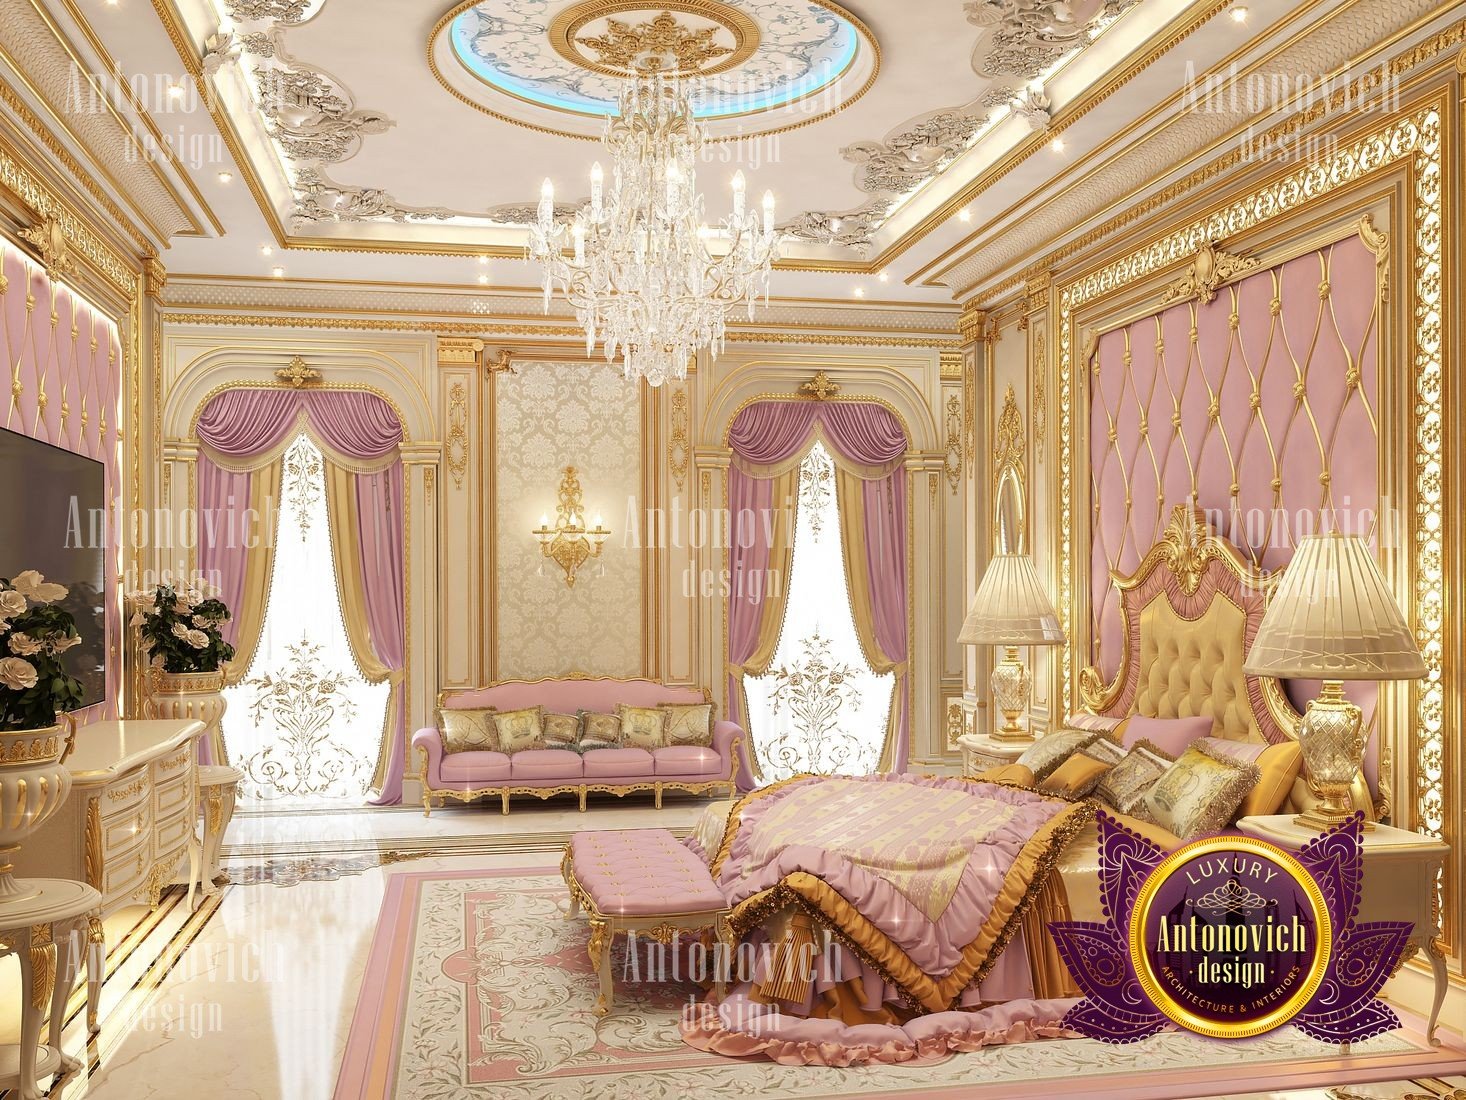 Best Bedroom design Lagos